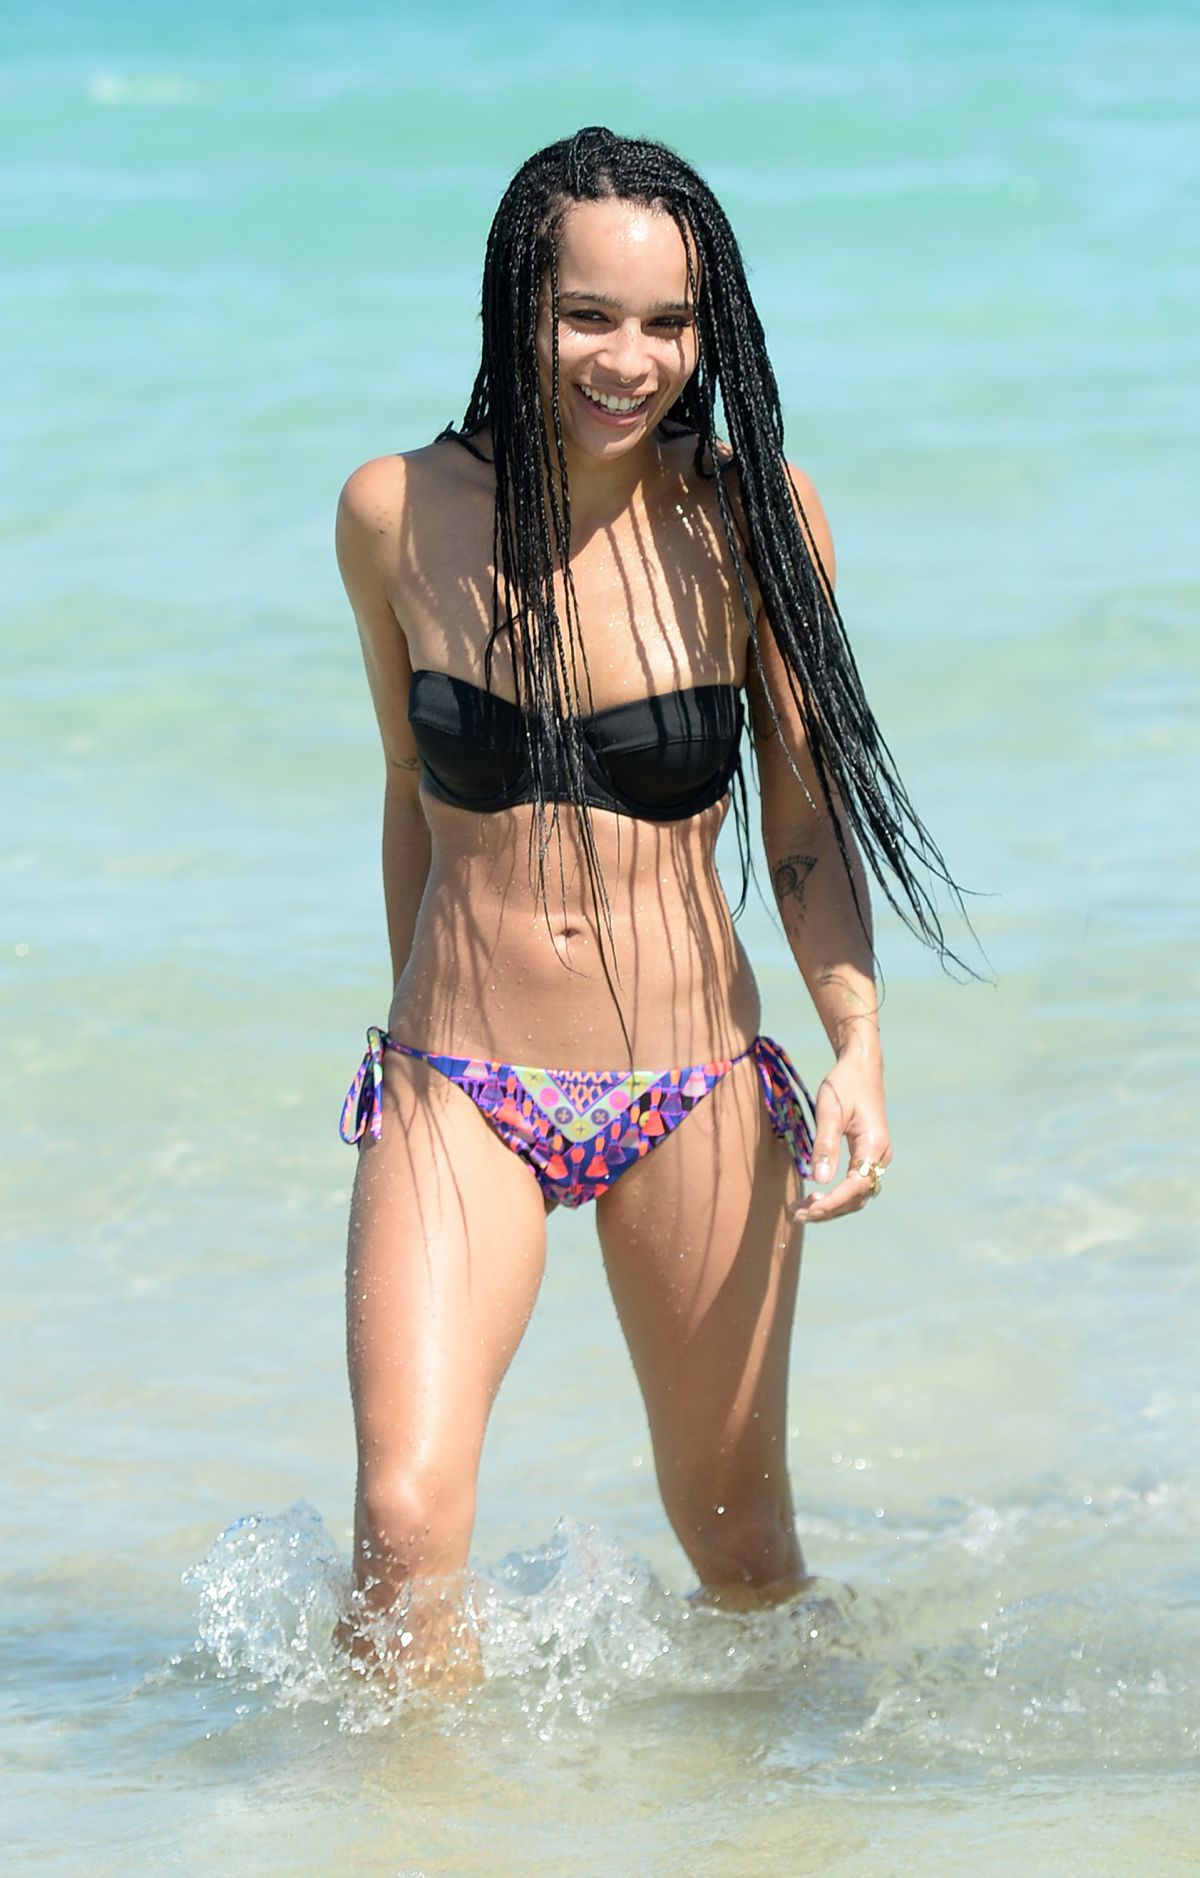 ZOE KRAVITZ in Bikini on the Beach in Miami.